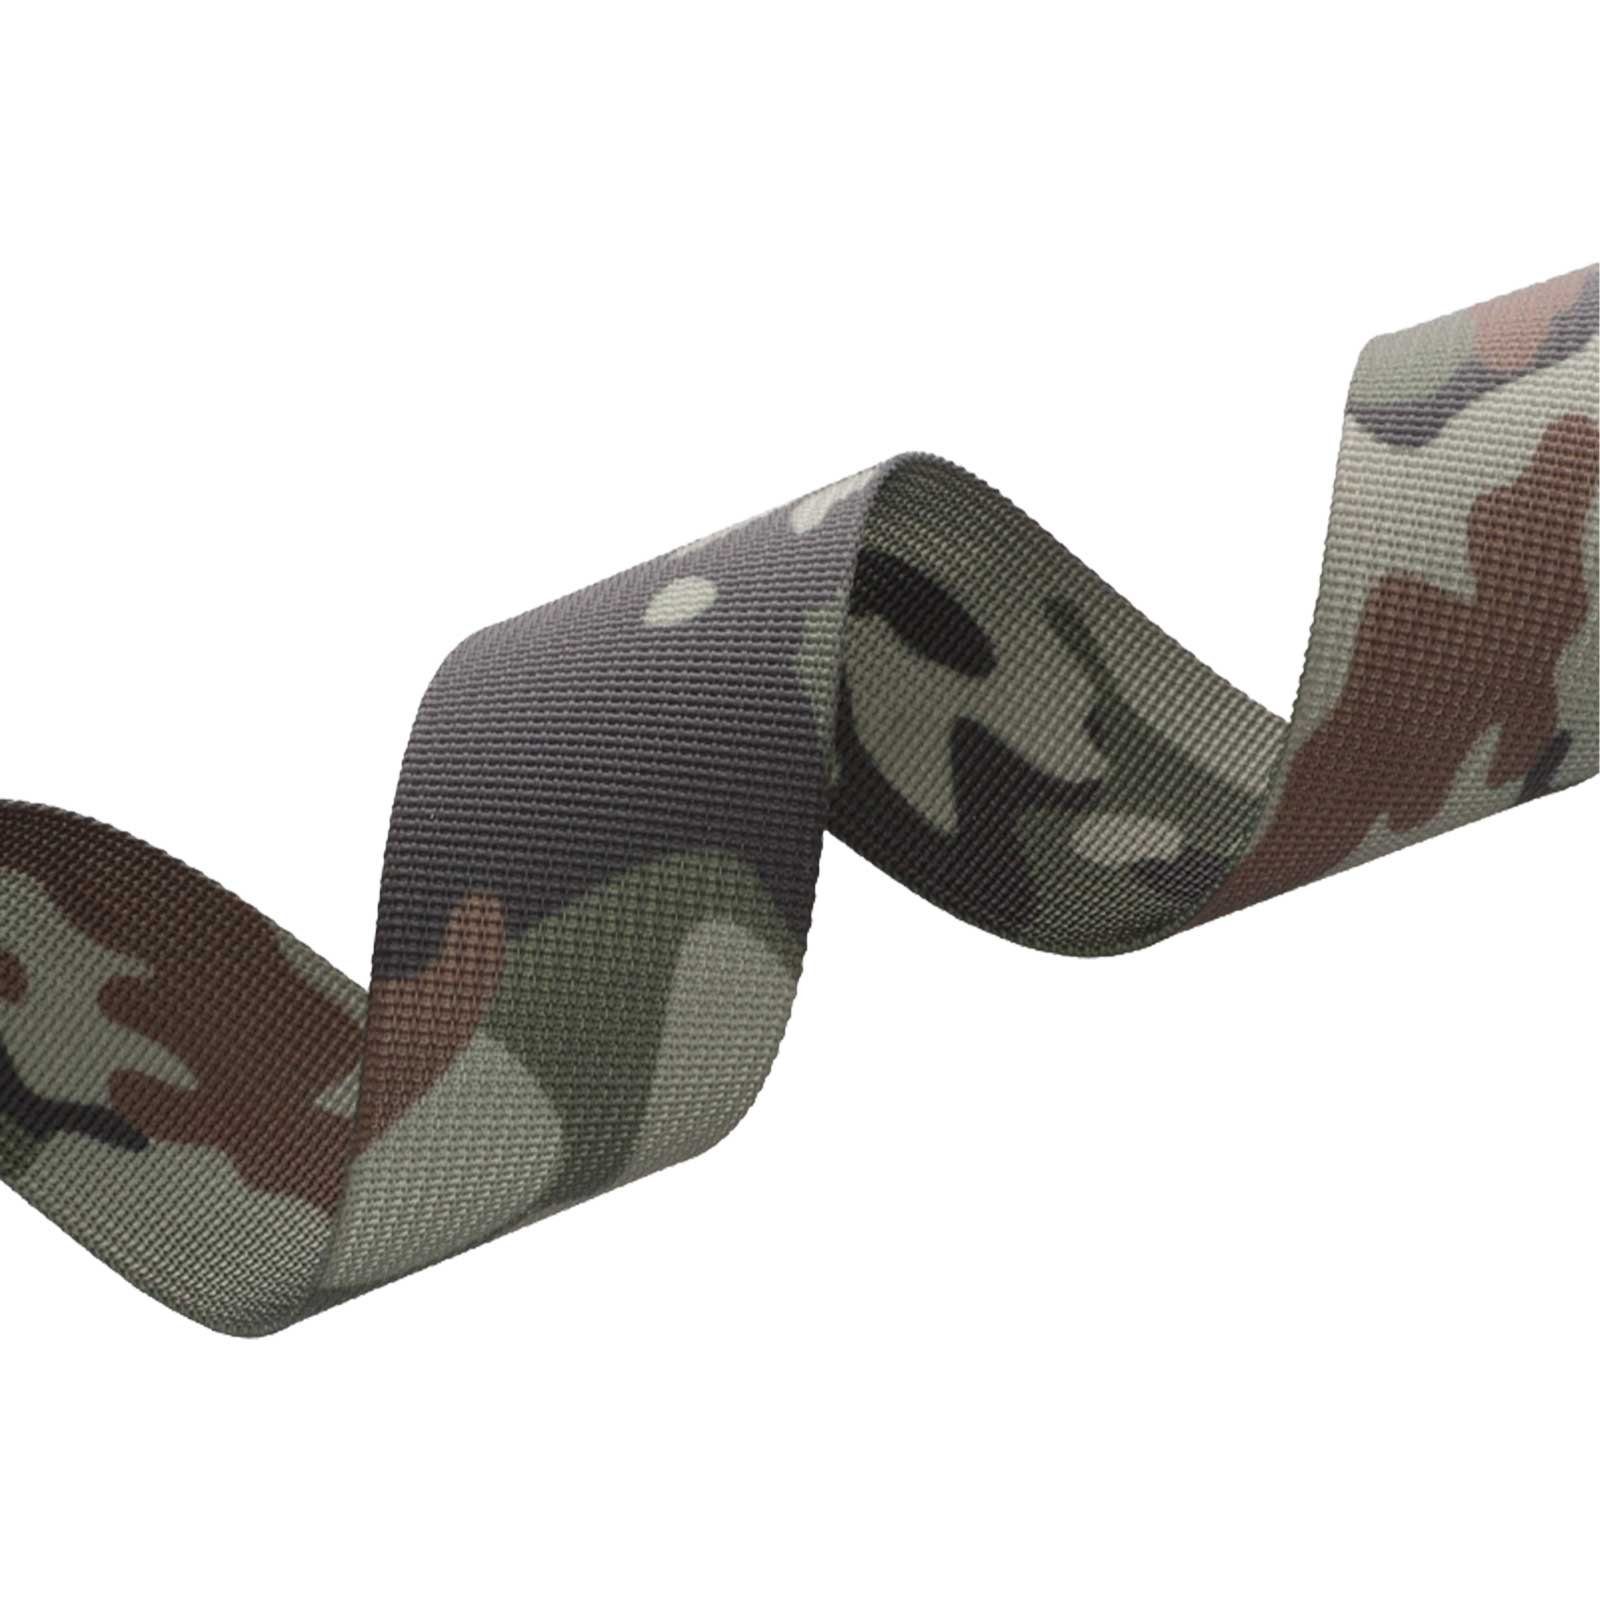 Gurtband Design camouflage Tarnmuster dark im Rollladengurt, maDDma 1m